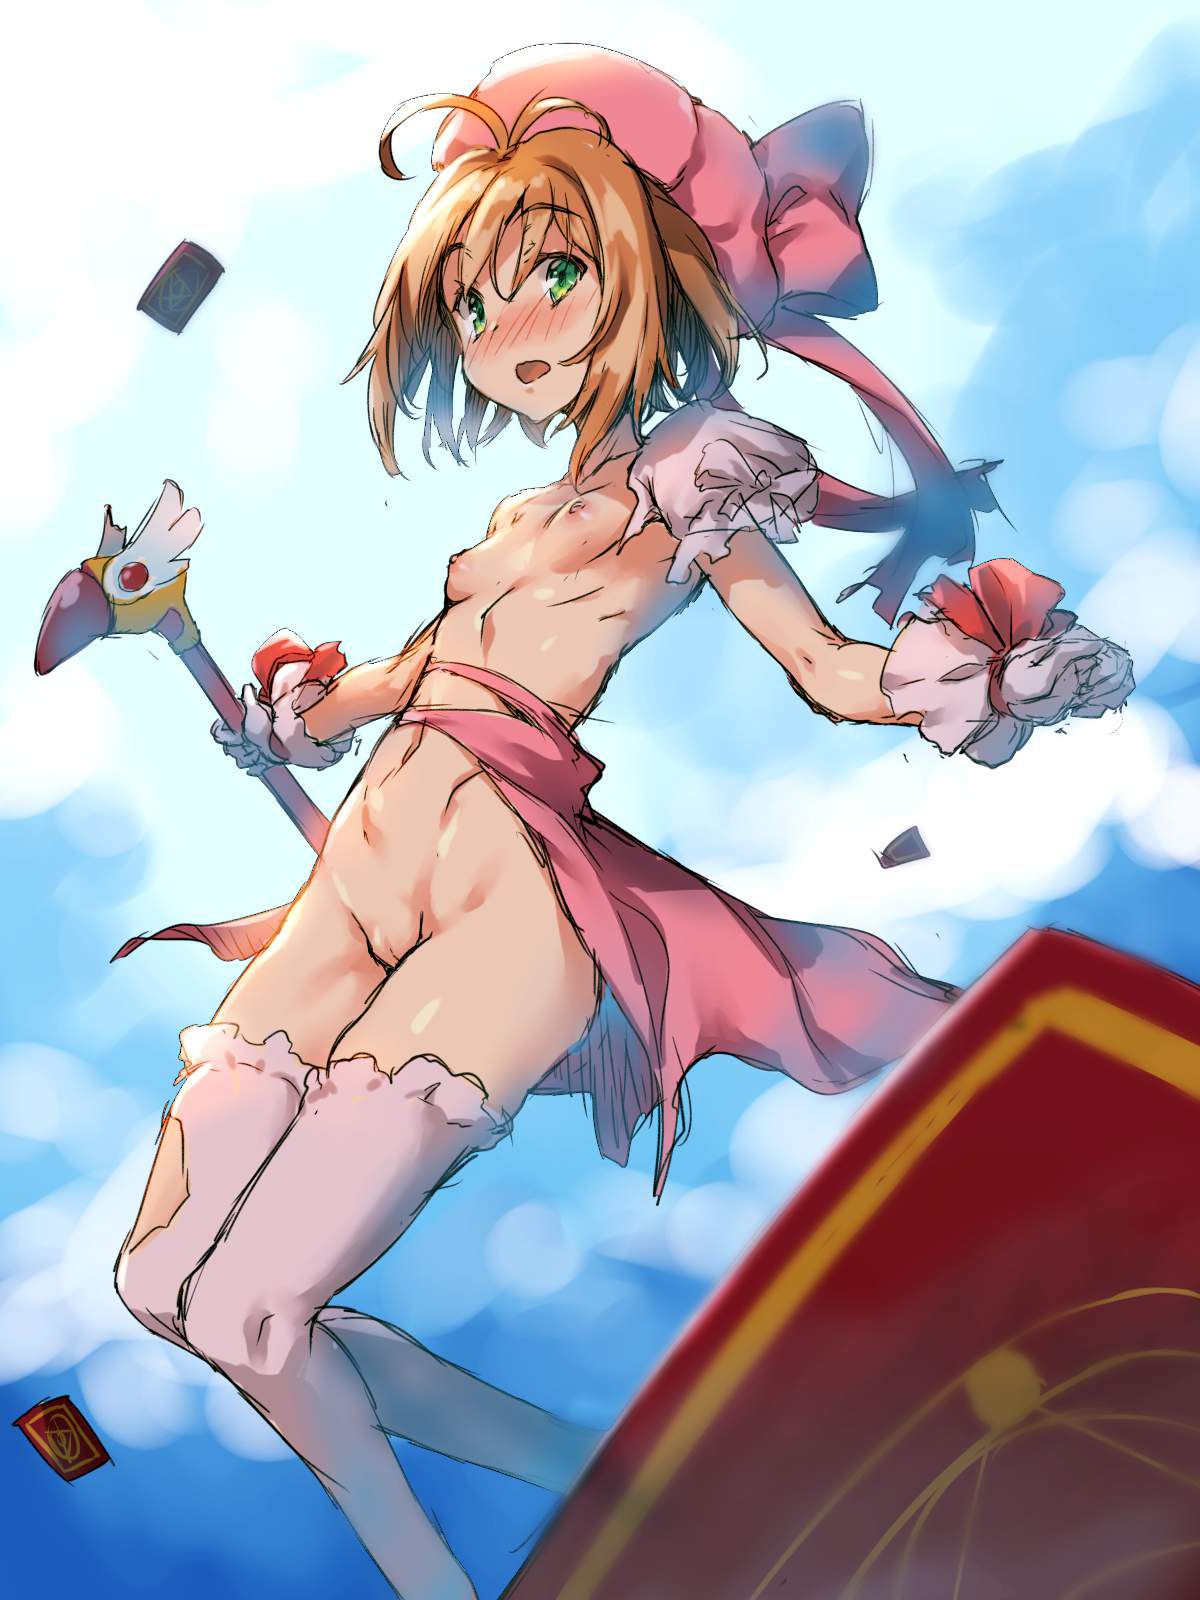 Cute two-dimensional image of card captor Sakura. 3